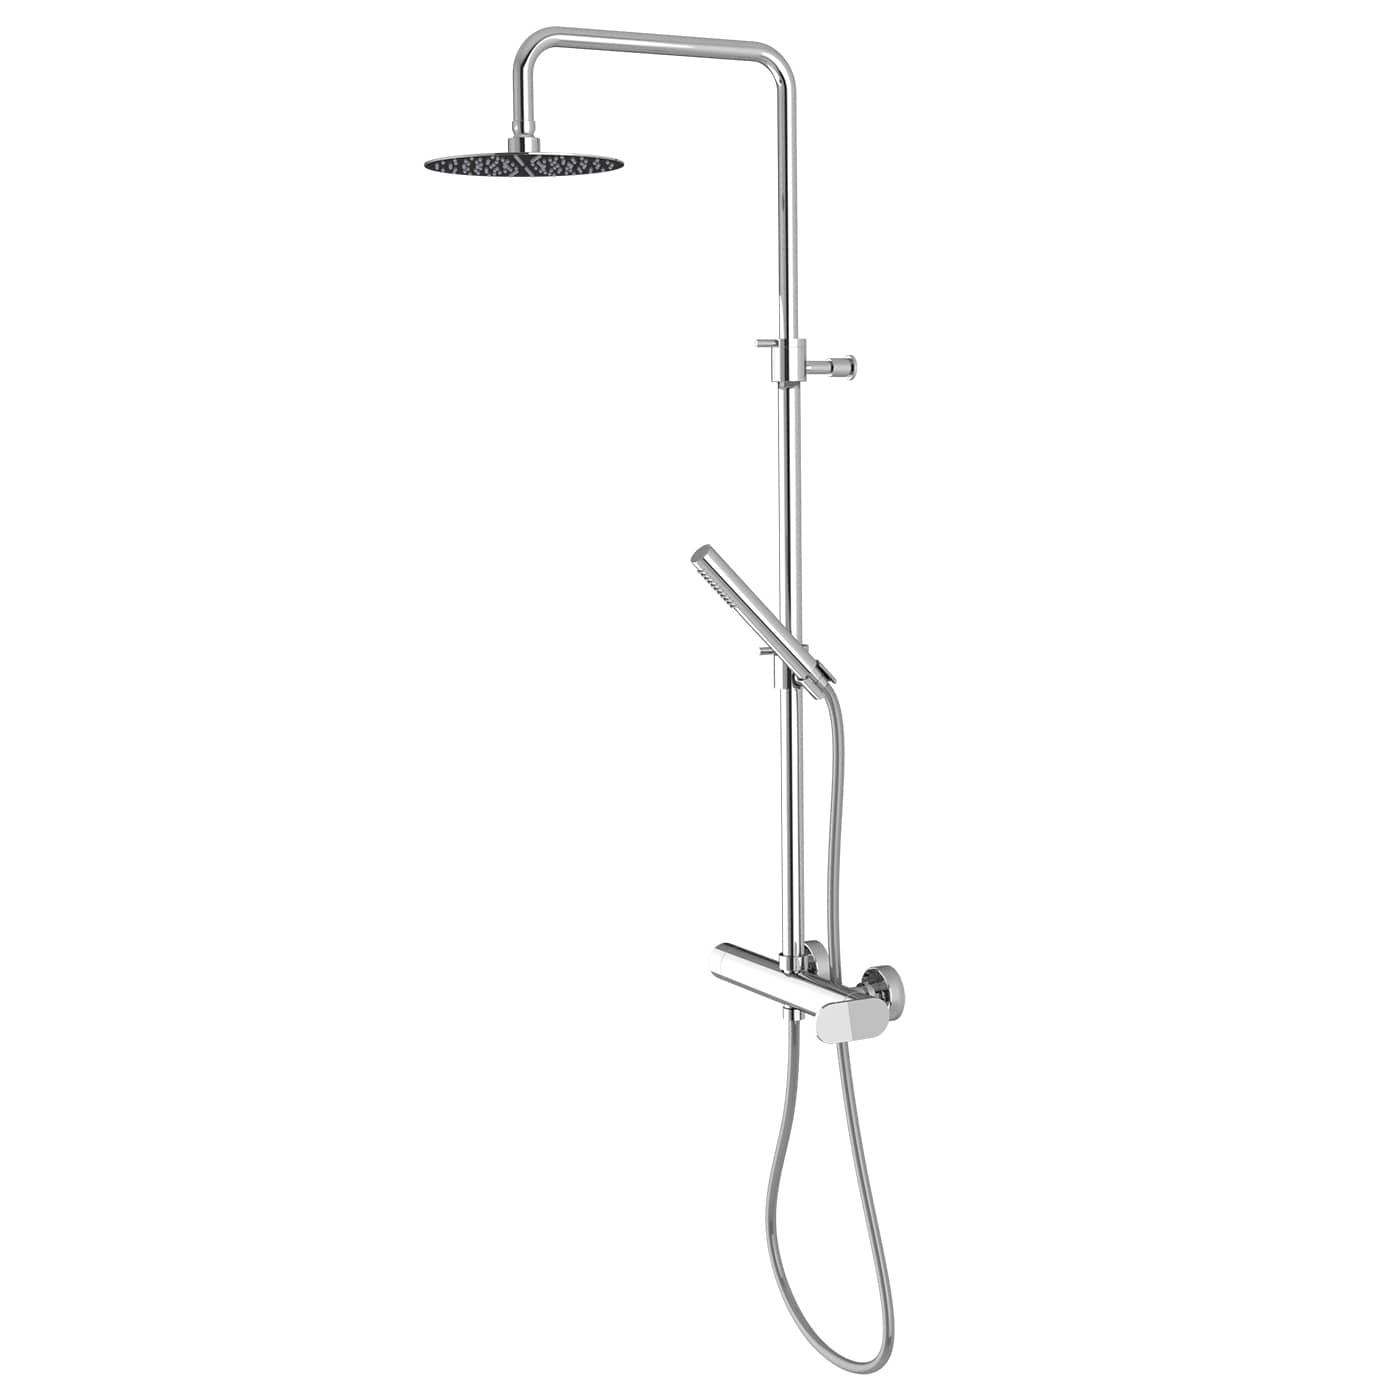 VICD129RO - Colonna doccia con miscelatore esterno doccia a 2 uscite